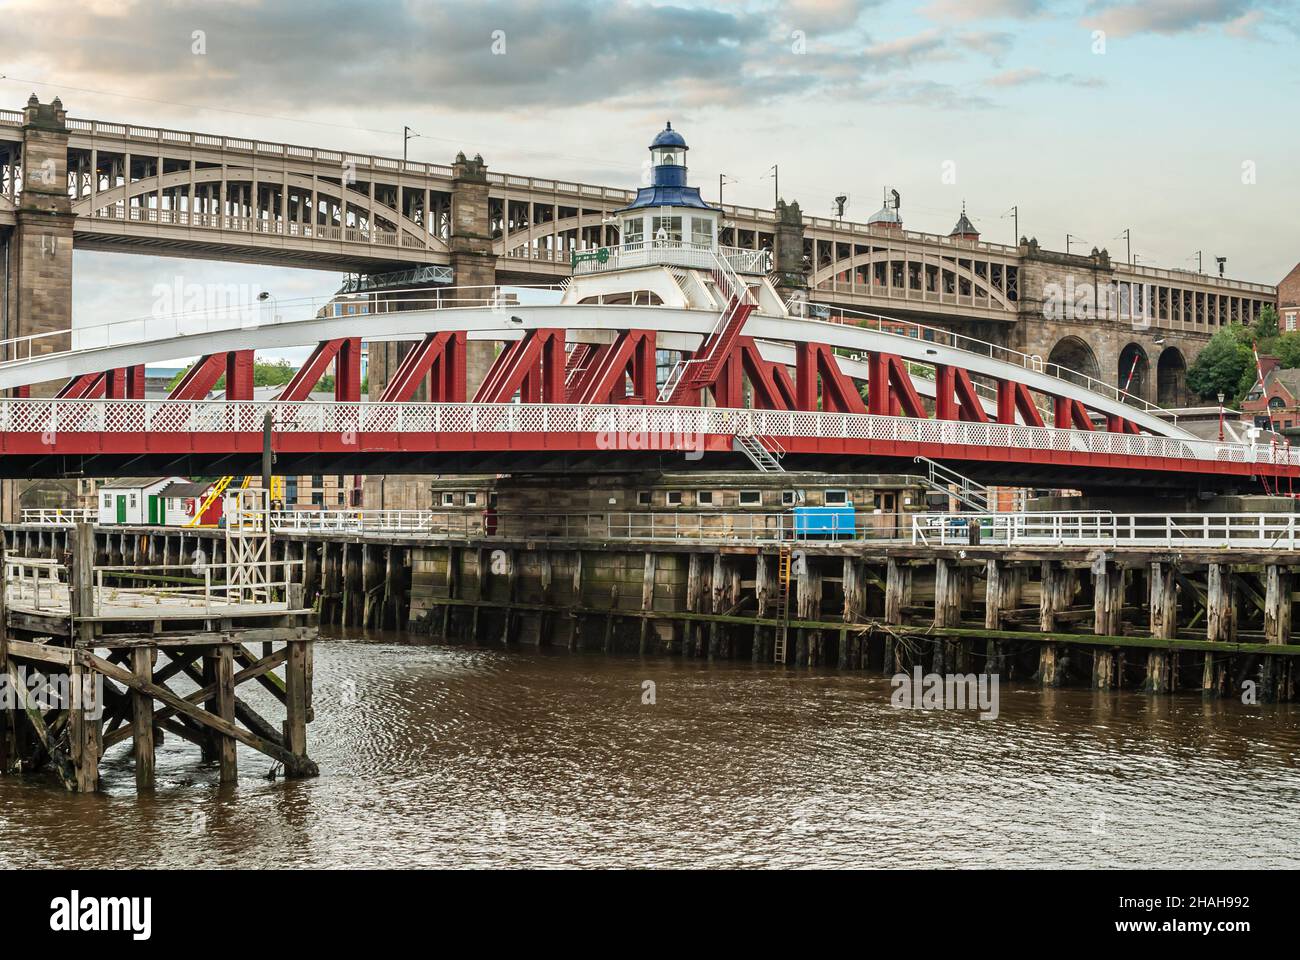 Pont de haut niveau et pont pivotant traversant la rivière Tyne, Newcastle upon Tyne, Gateshead, Angleterre, Royaume-Uni Banque D'Images